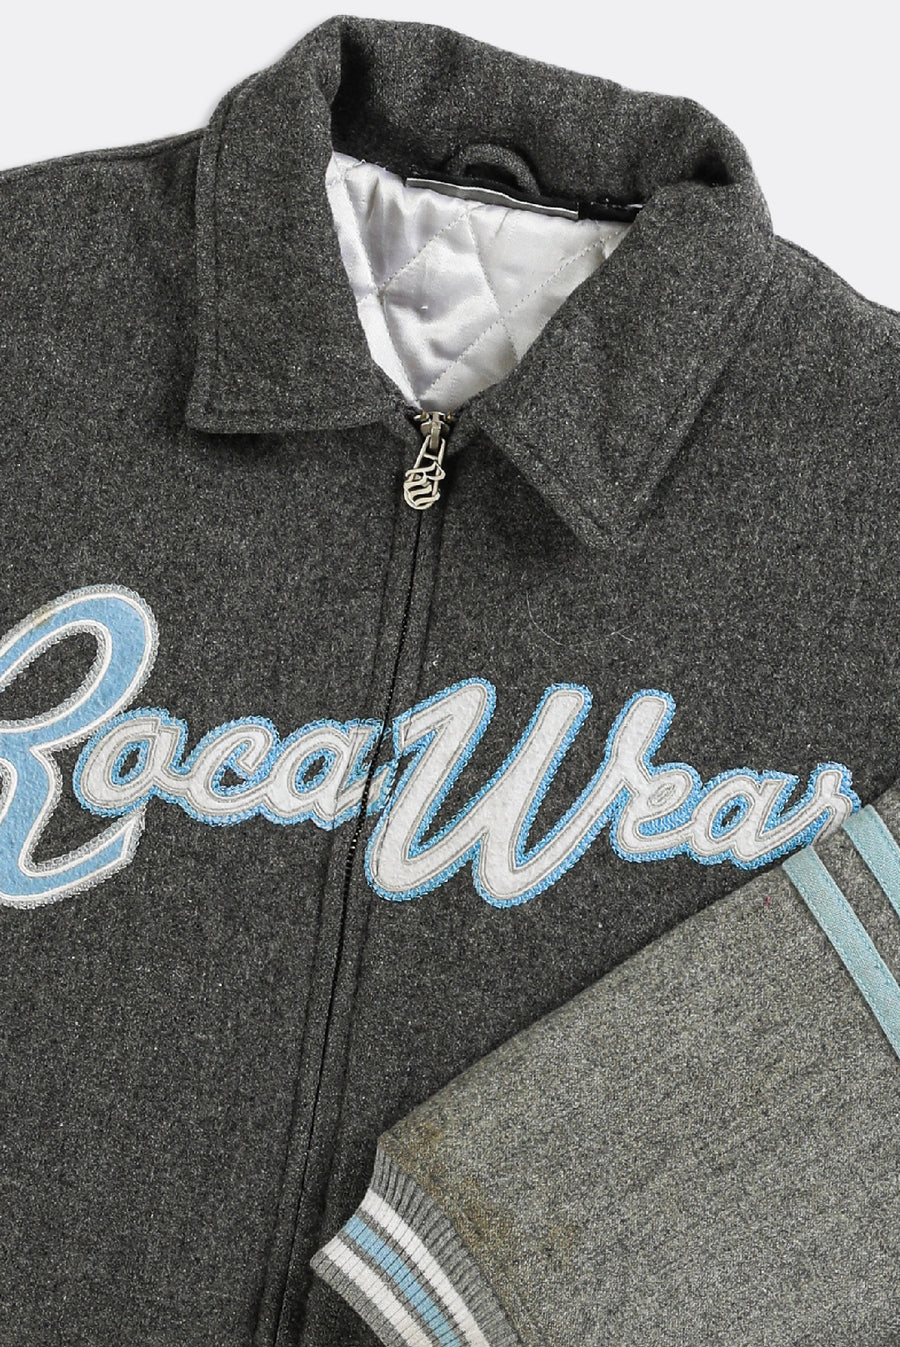 Vintage Petite Rocawear Varsity Jacket